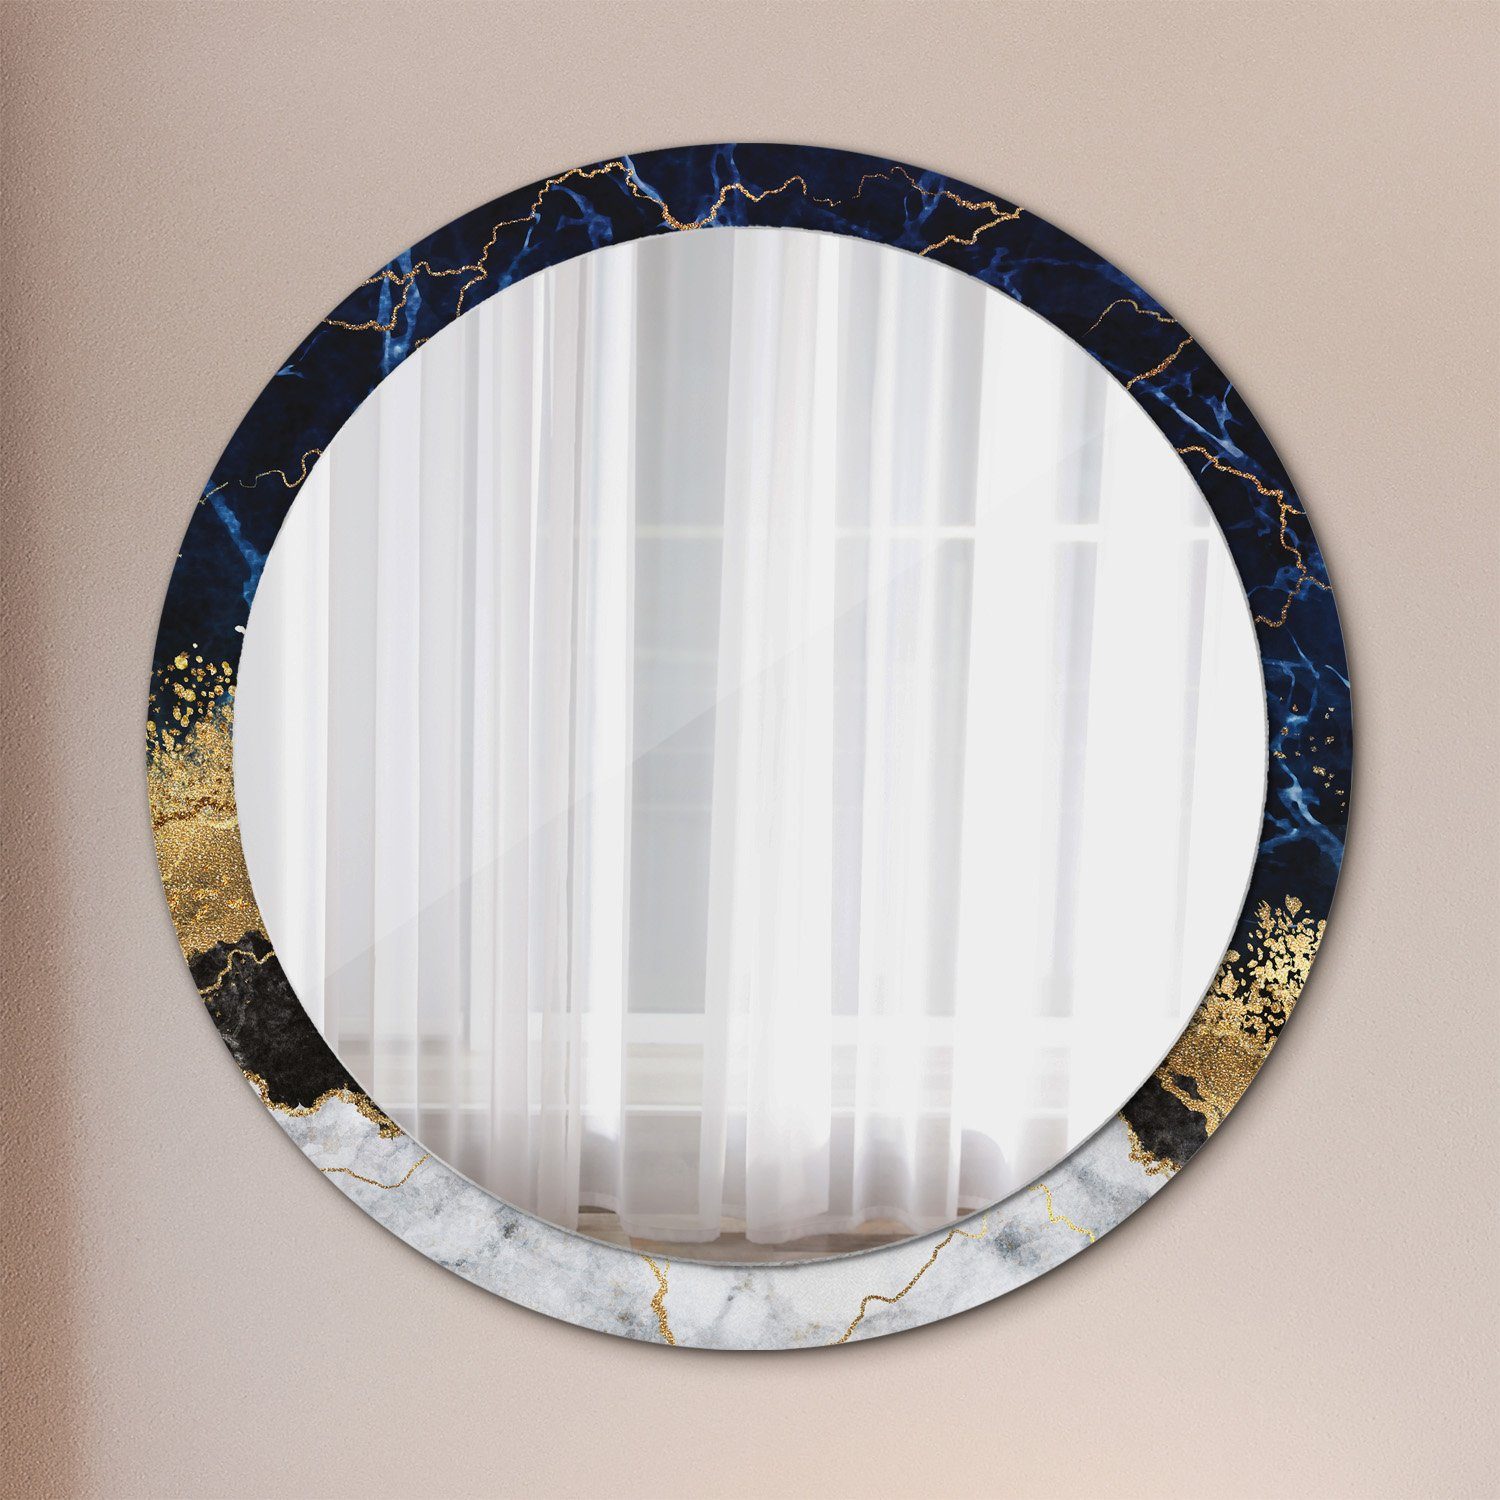 Tulup Wandspiegel Runder Deko Spiegel mit Modernem Aufdruck Rundspiegel Rund: Ø100cm, Runder Spiegel mit Modernem Aufdruck Blau Marmor